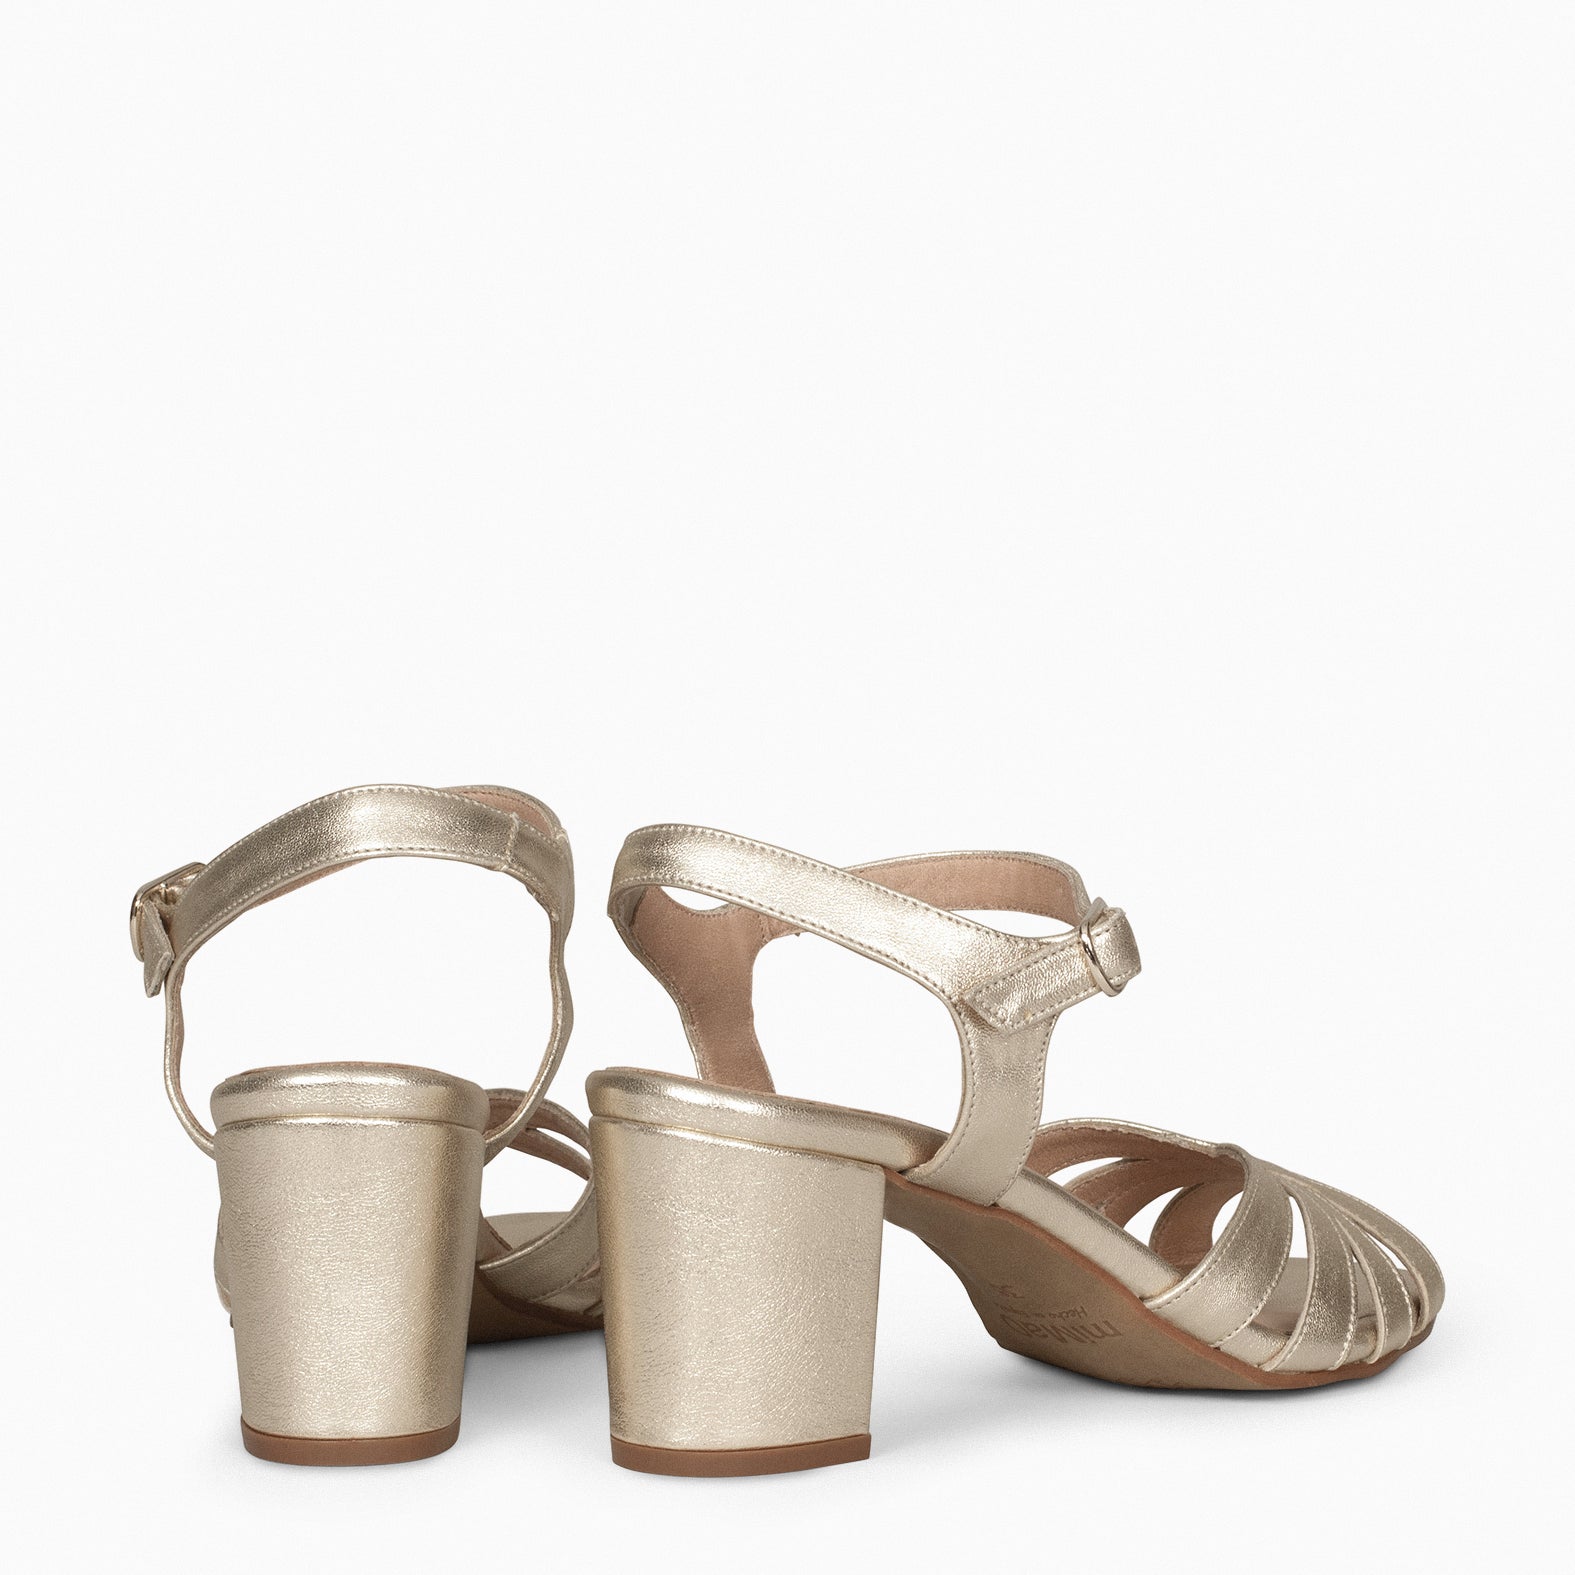 MUSE – GOLDEN block heel sandals